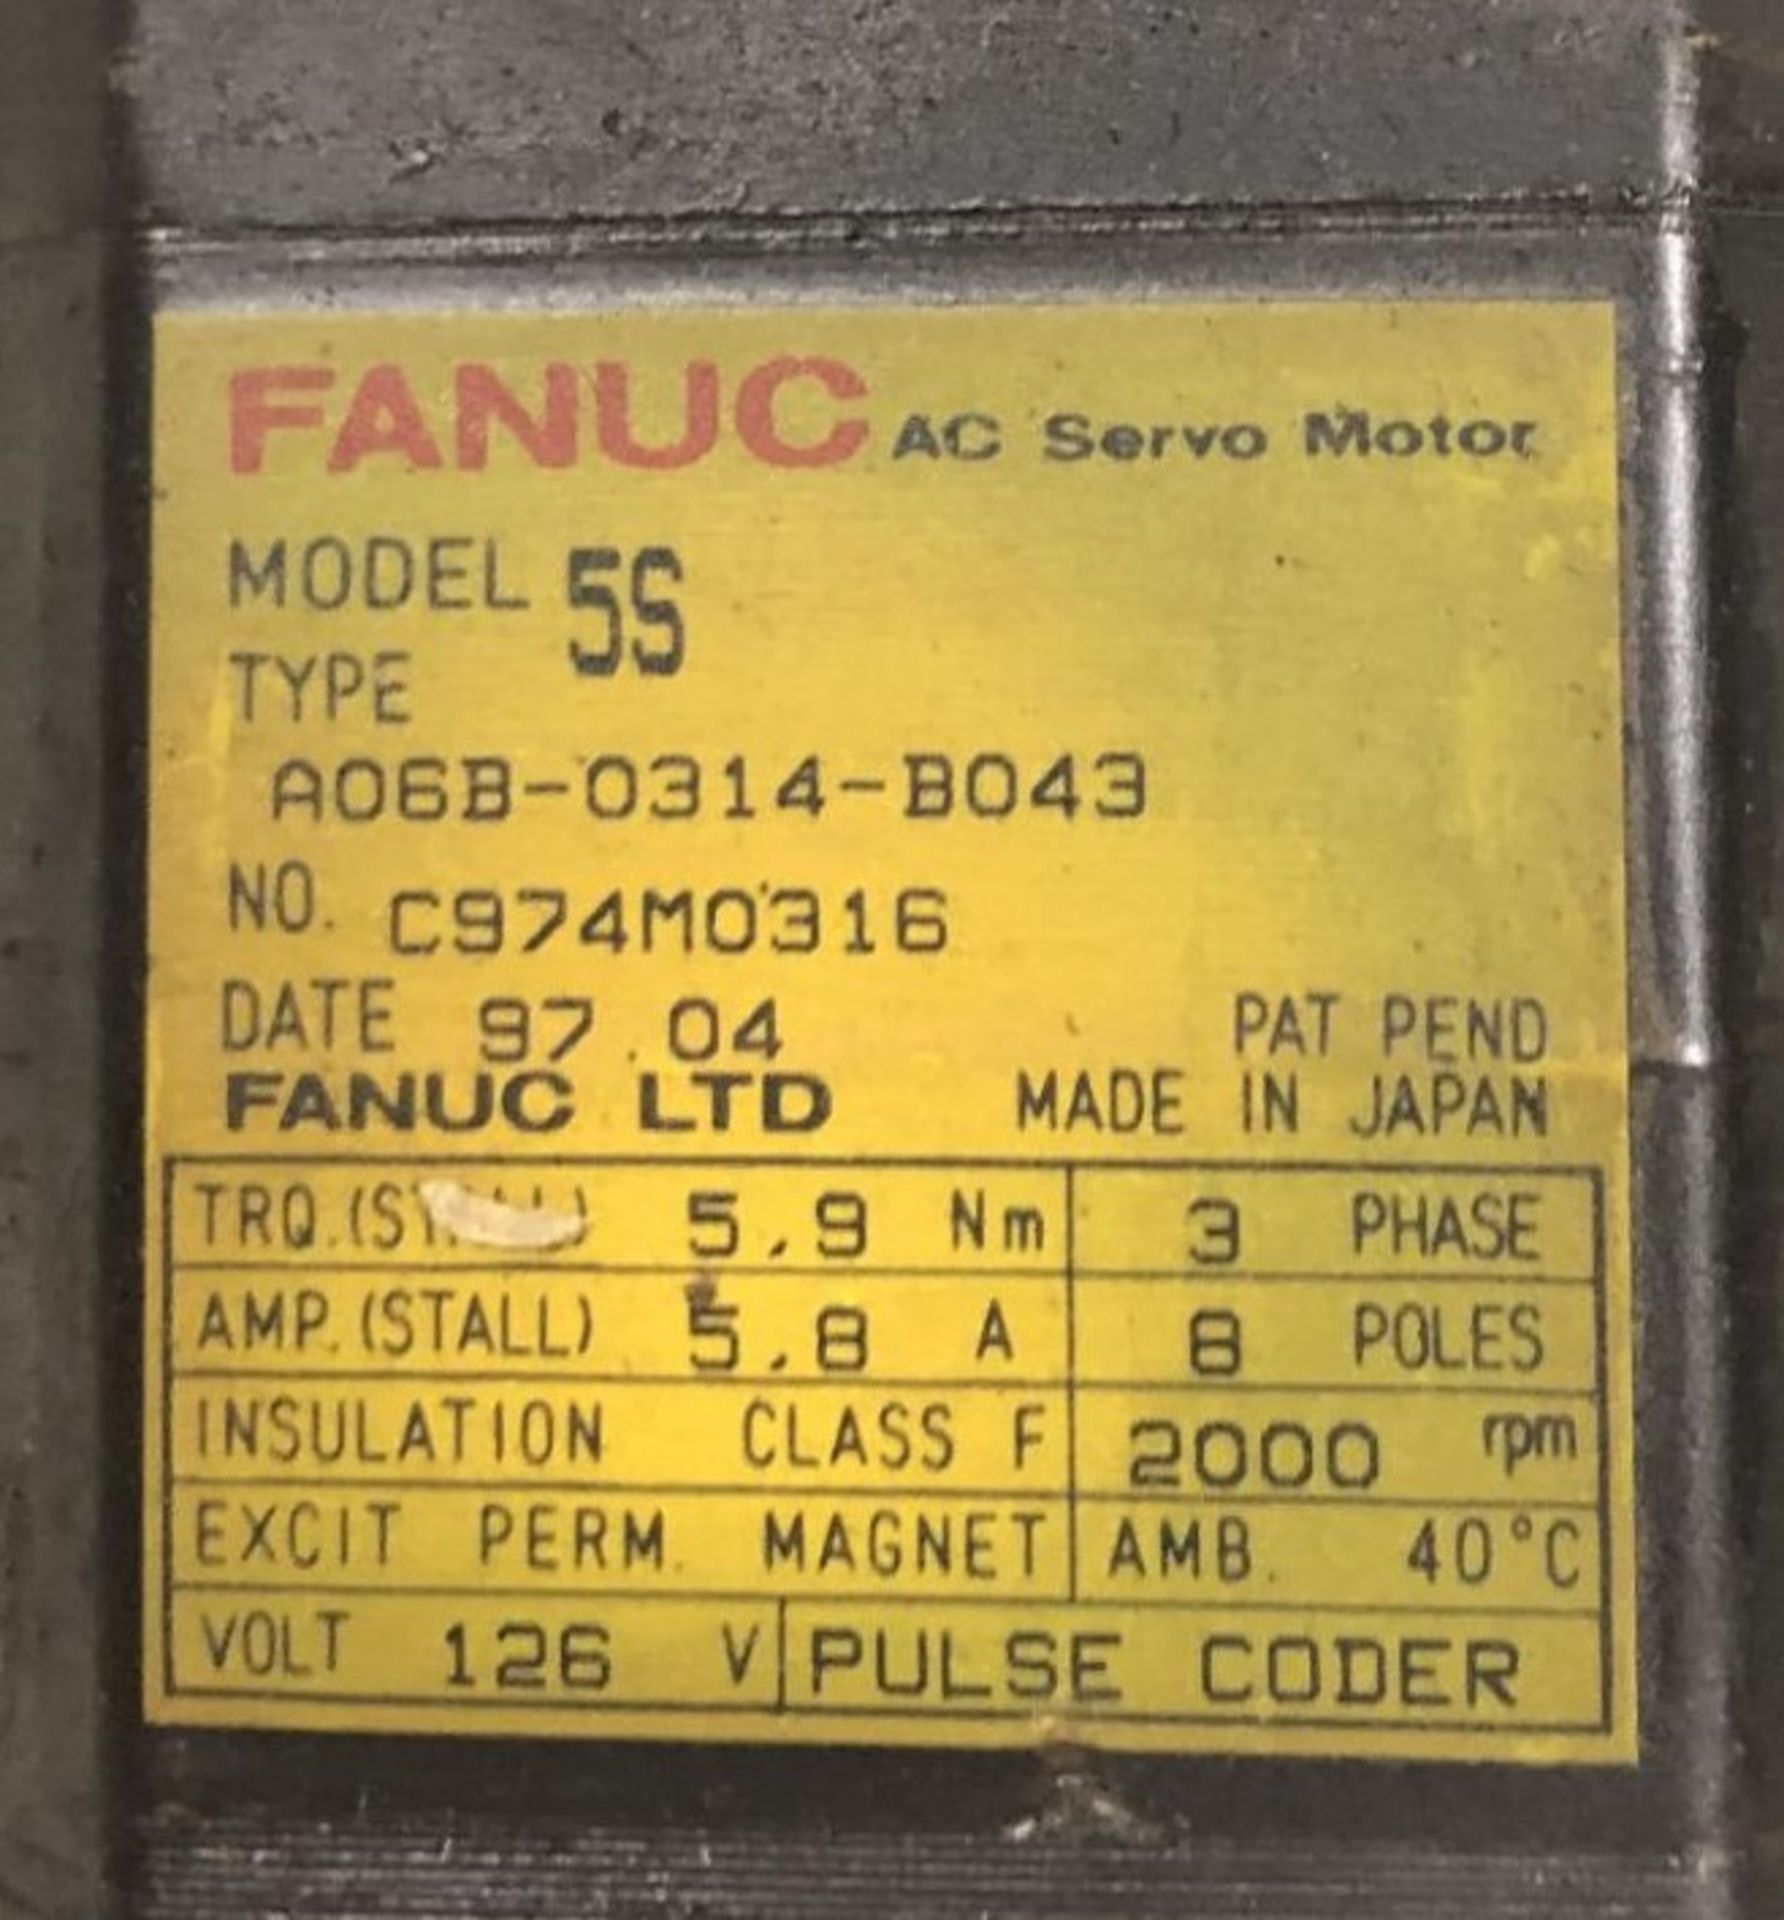 Fanuc AC Servo Motor, A06B-0314-B043 - Image 5 of 5